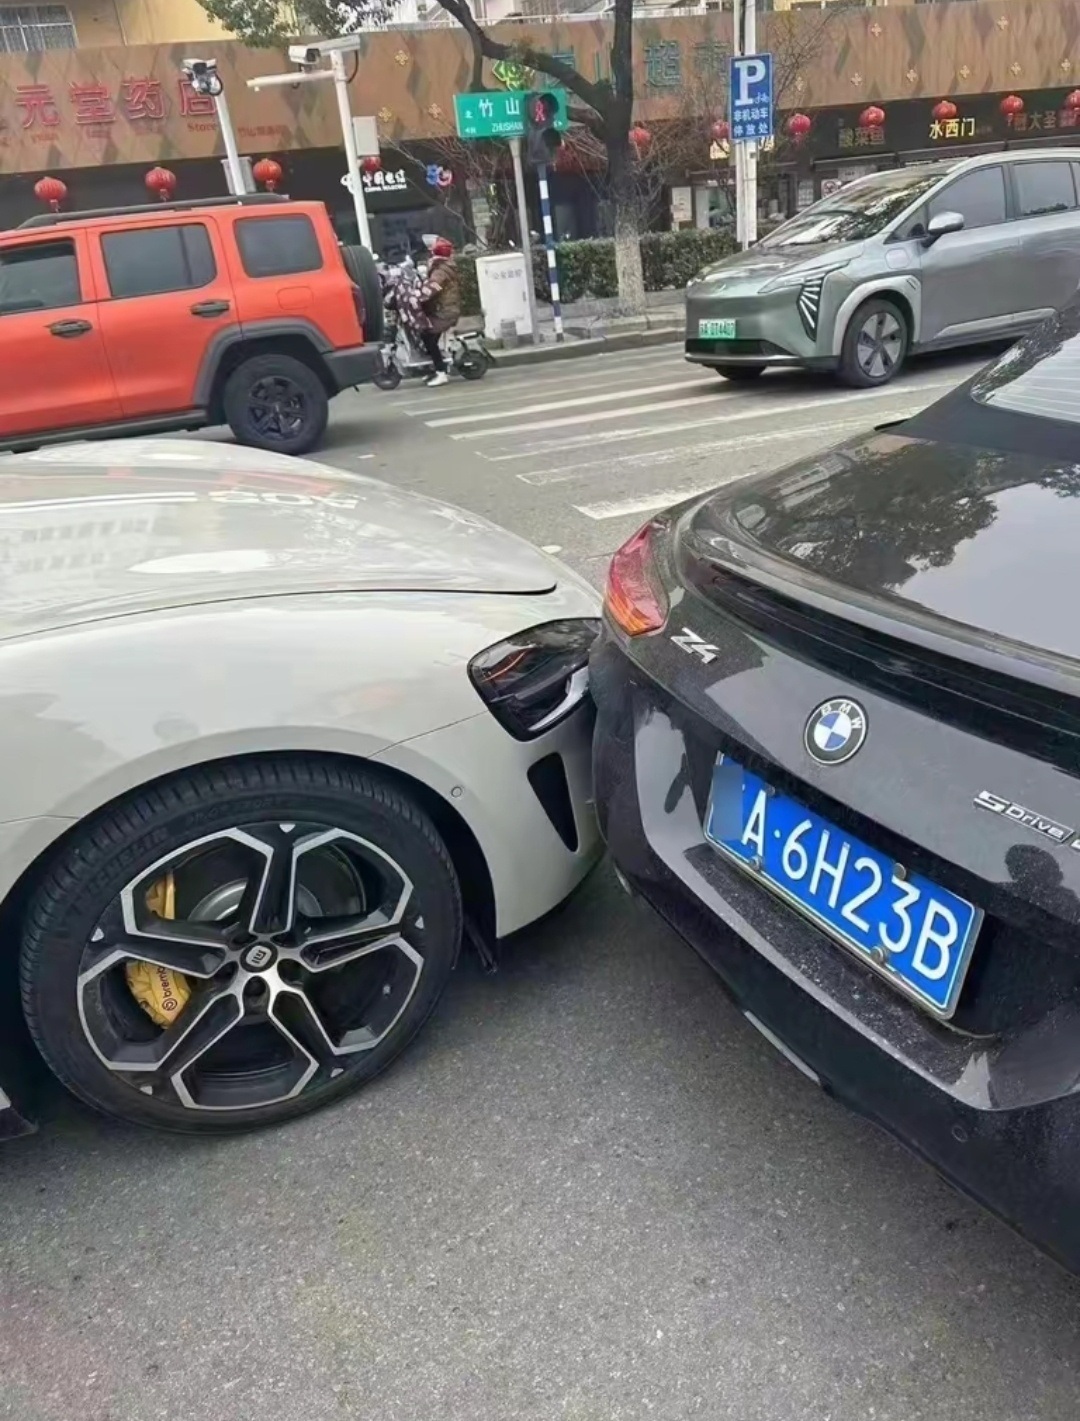 Có vẻ như trong lúc tình hình mất kiểm soát, tài xế đã cố đánh lái tránh đuôi xe BMW nhưng không kịp (Ảnh: Weibo).